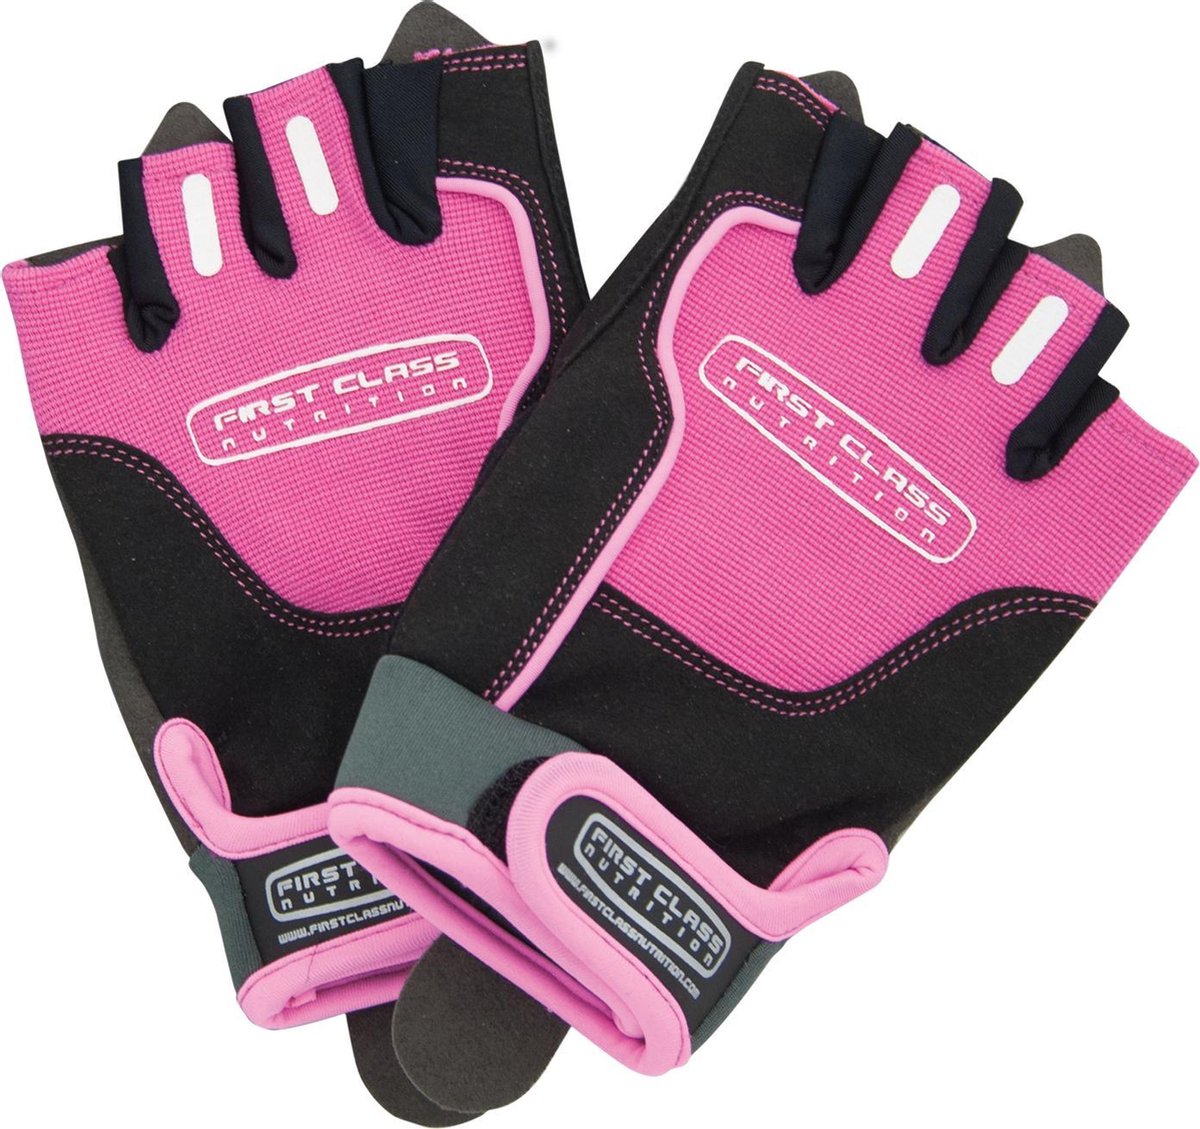 Gloves (XL - Pink) - FIRST CLASS NUTRITION - Fitness handschoenen